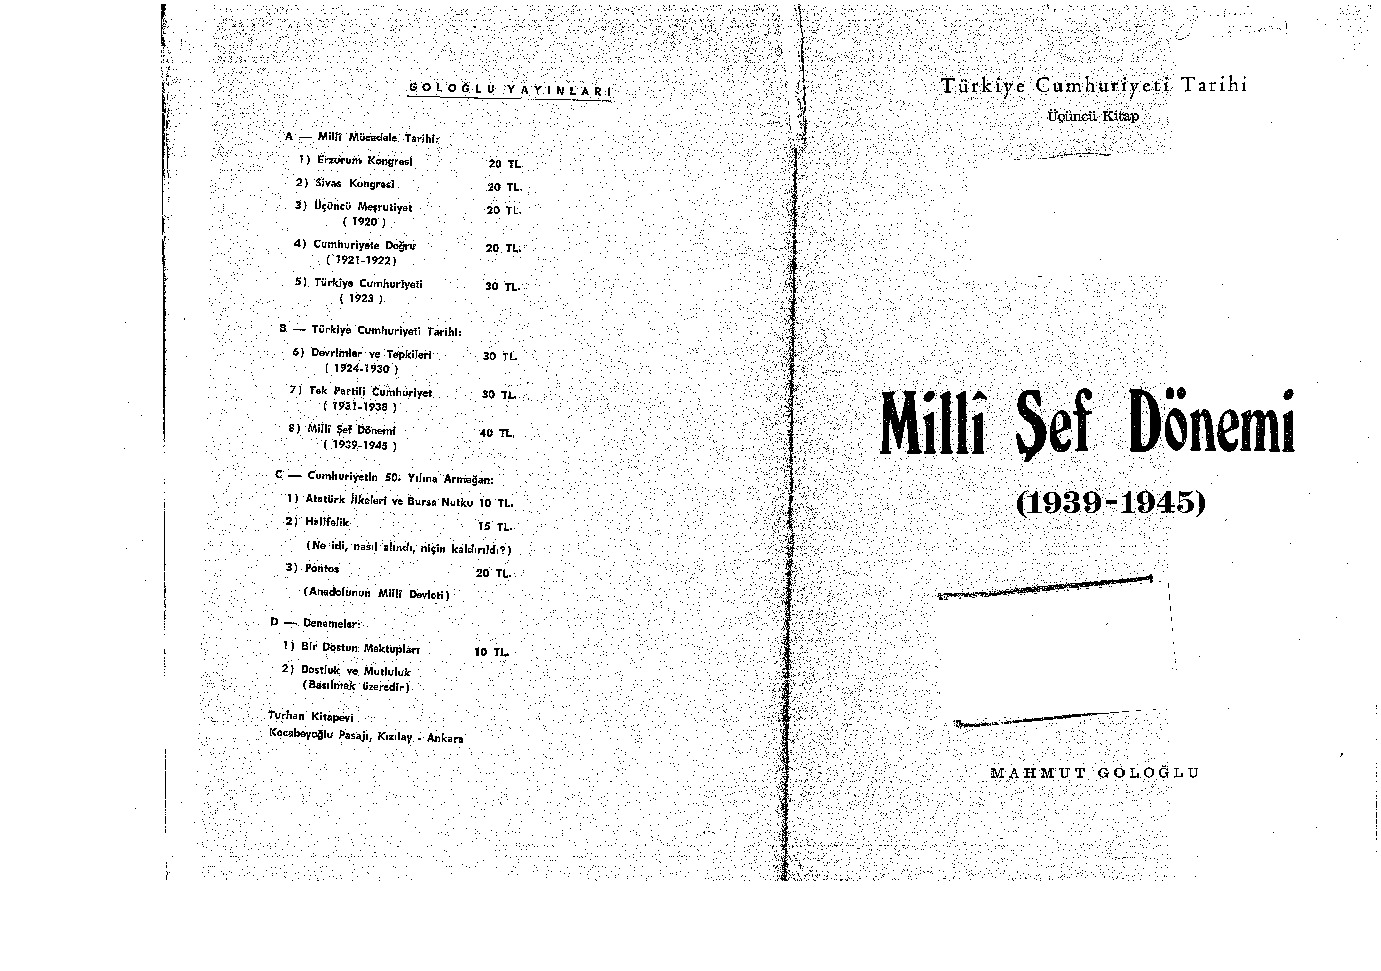 Milli Şef Dönemi-1930-1945-Mahmud Göloğlu-1974-423s